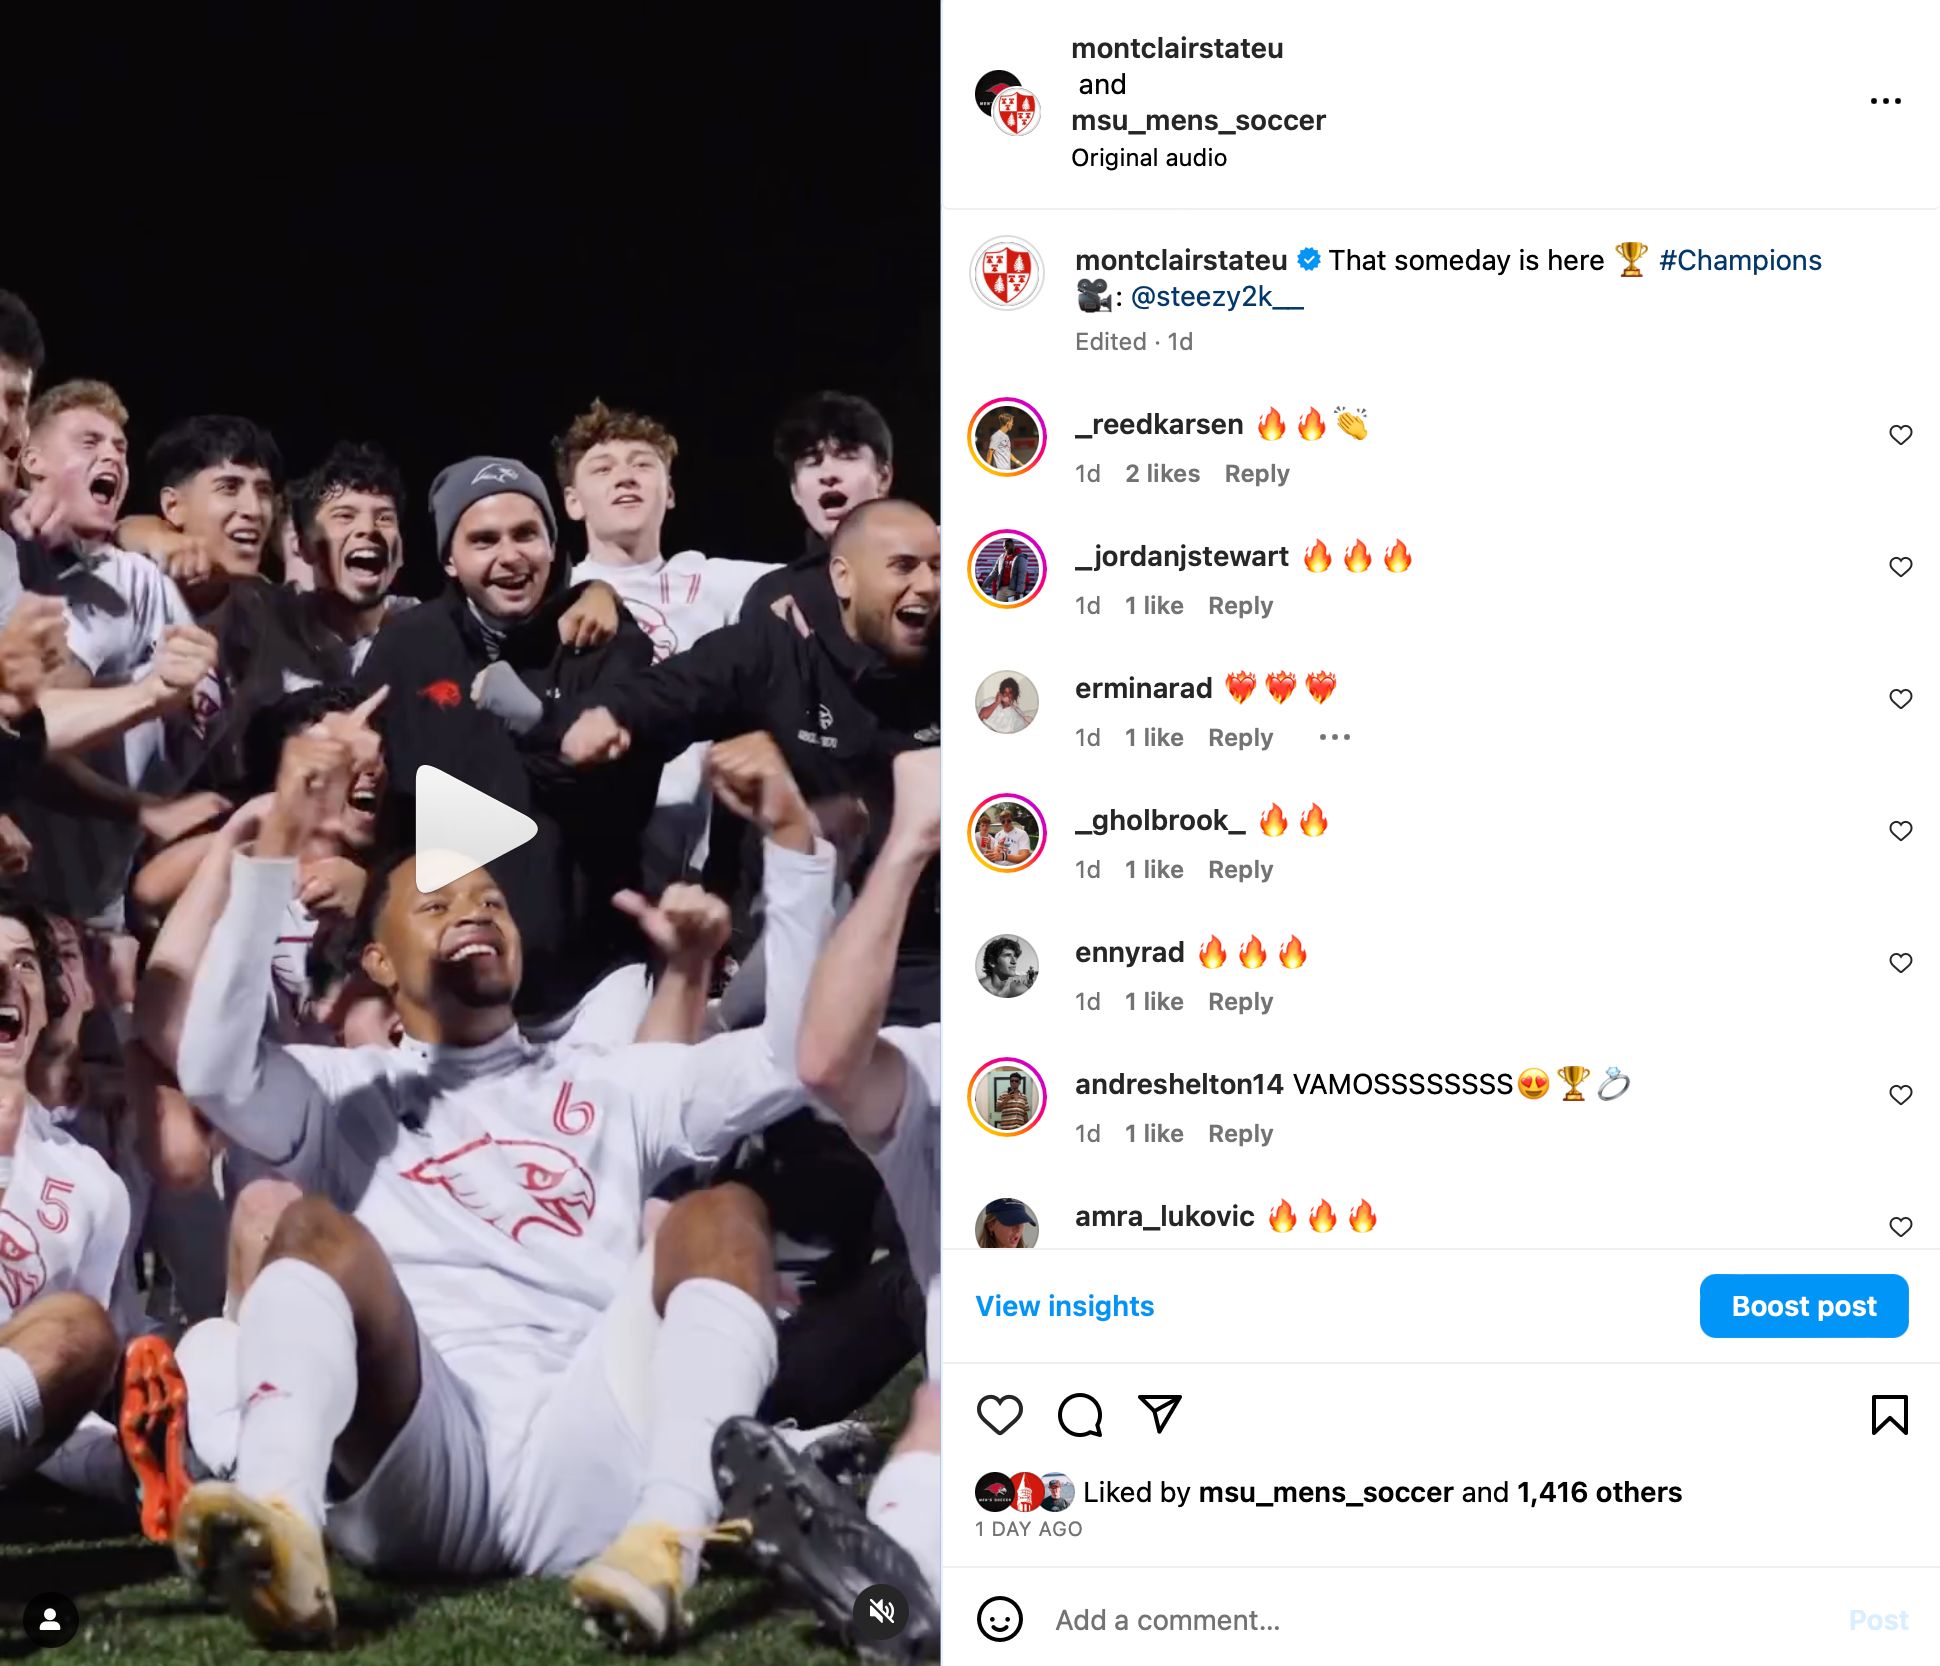 Screenshot of Instagram post - men's soccer team celebrating on the field